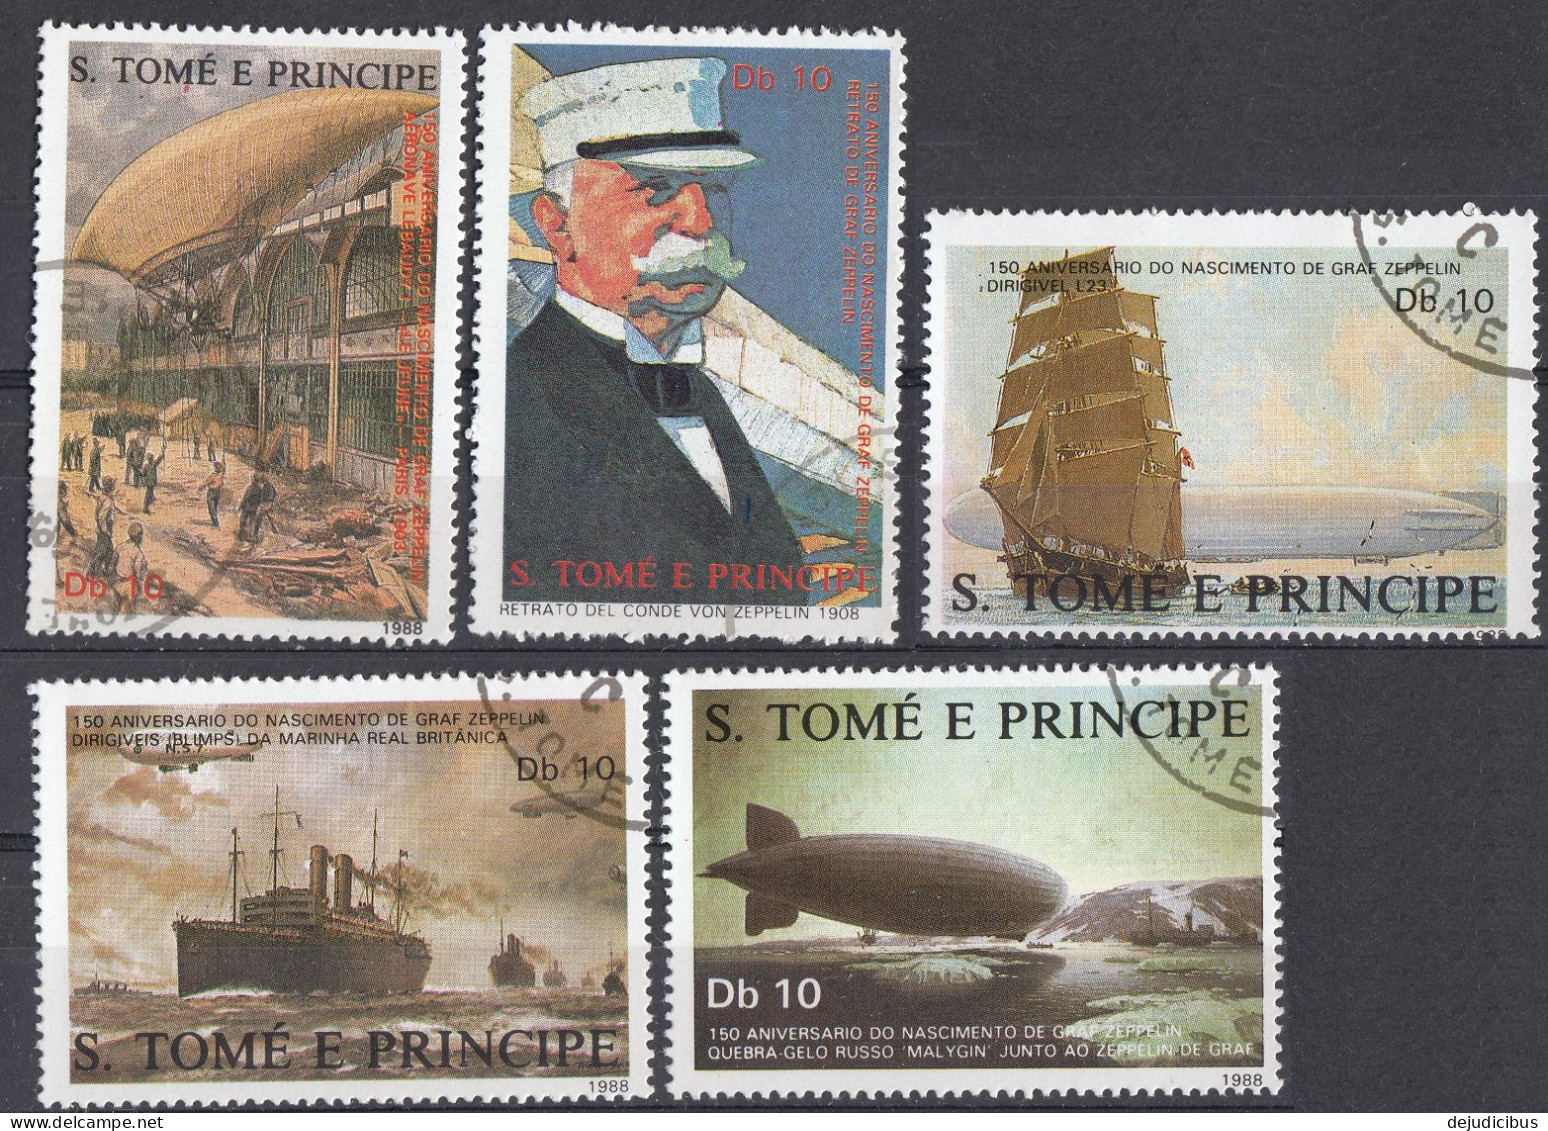 S. TOME' E PRINCIPE - 1988 - Serie Completa Di 5 Valori Usati: Yvert 915/919 - Sao Tomé E Principe